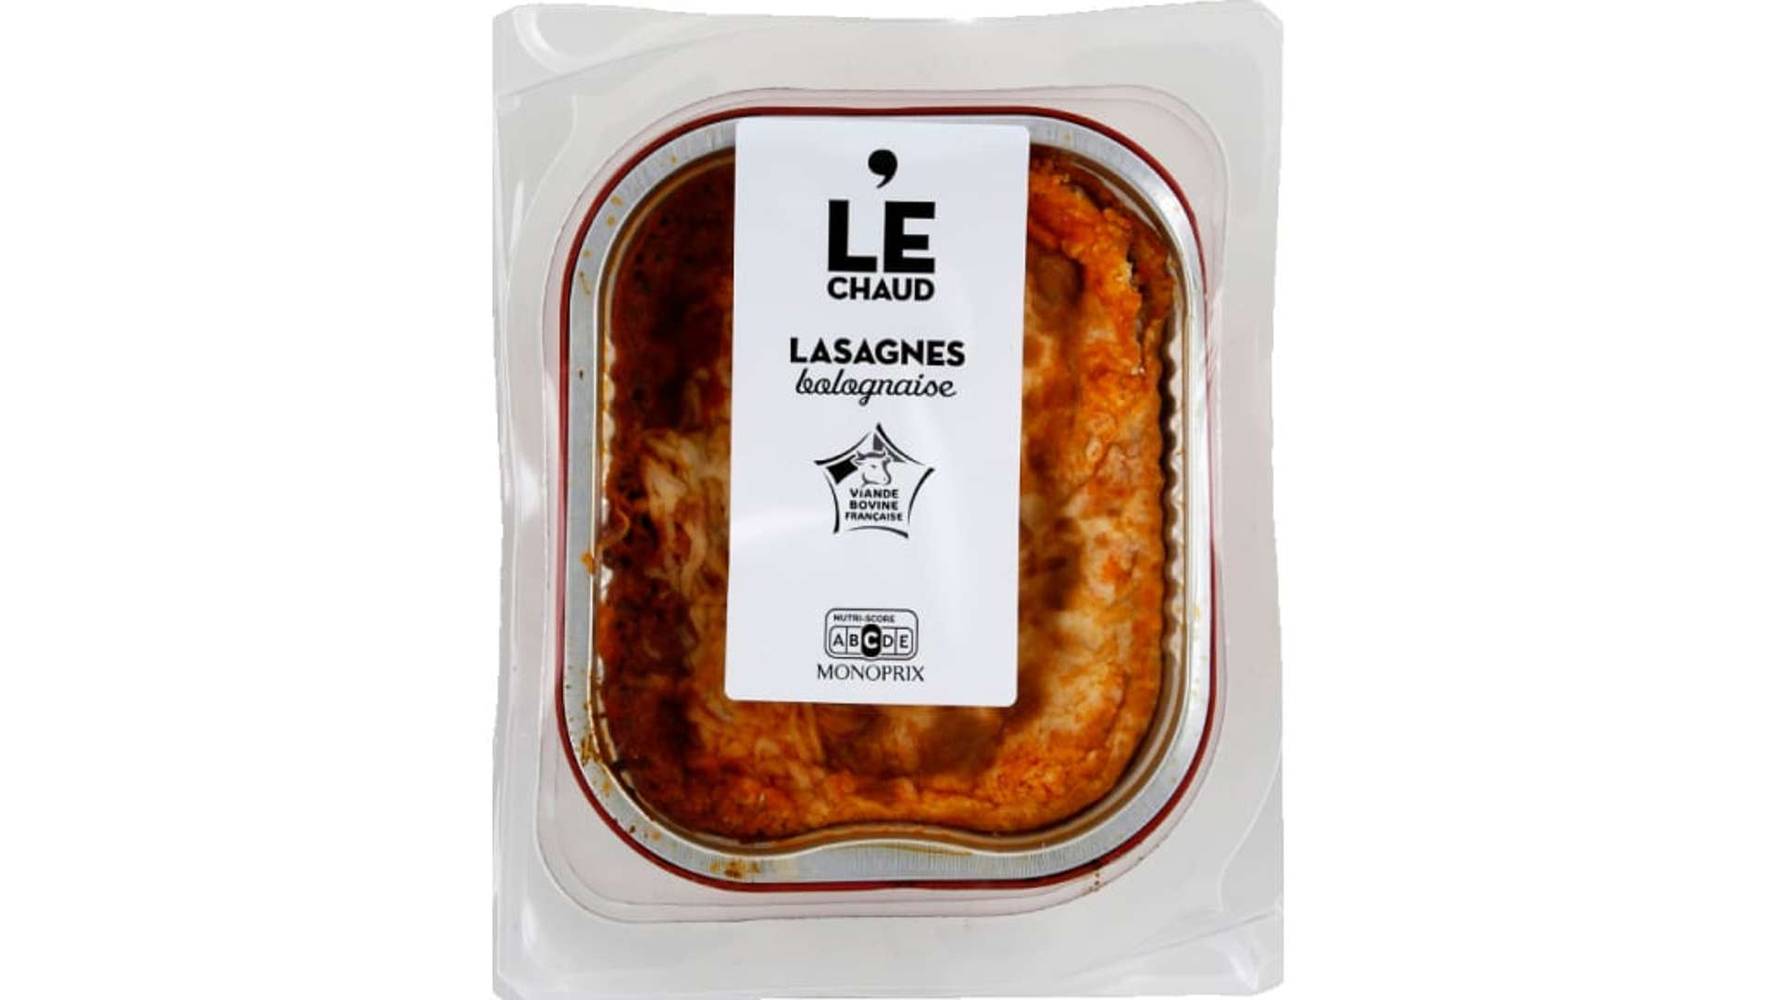 Monoprix Lasagnes bolognaise Le paquet de 350g